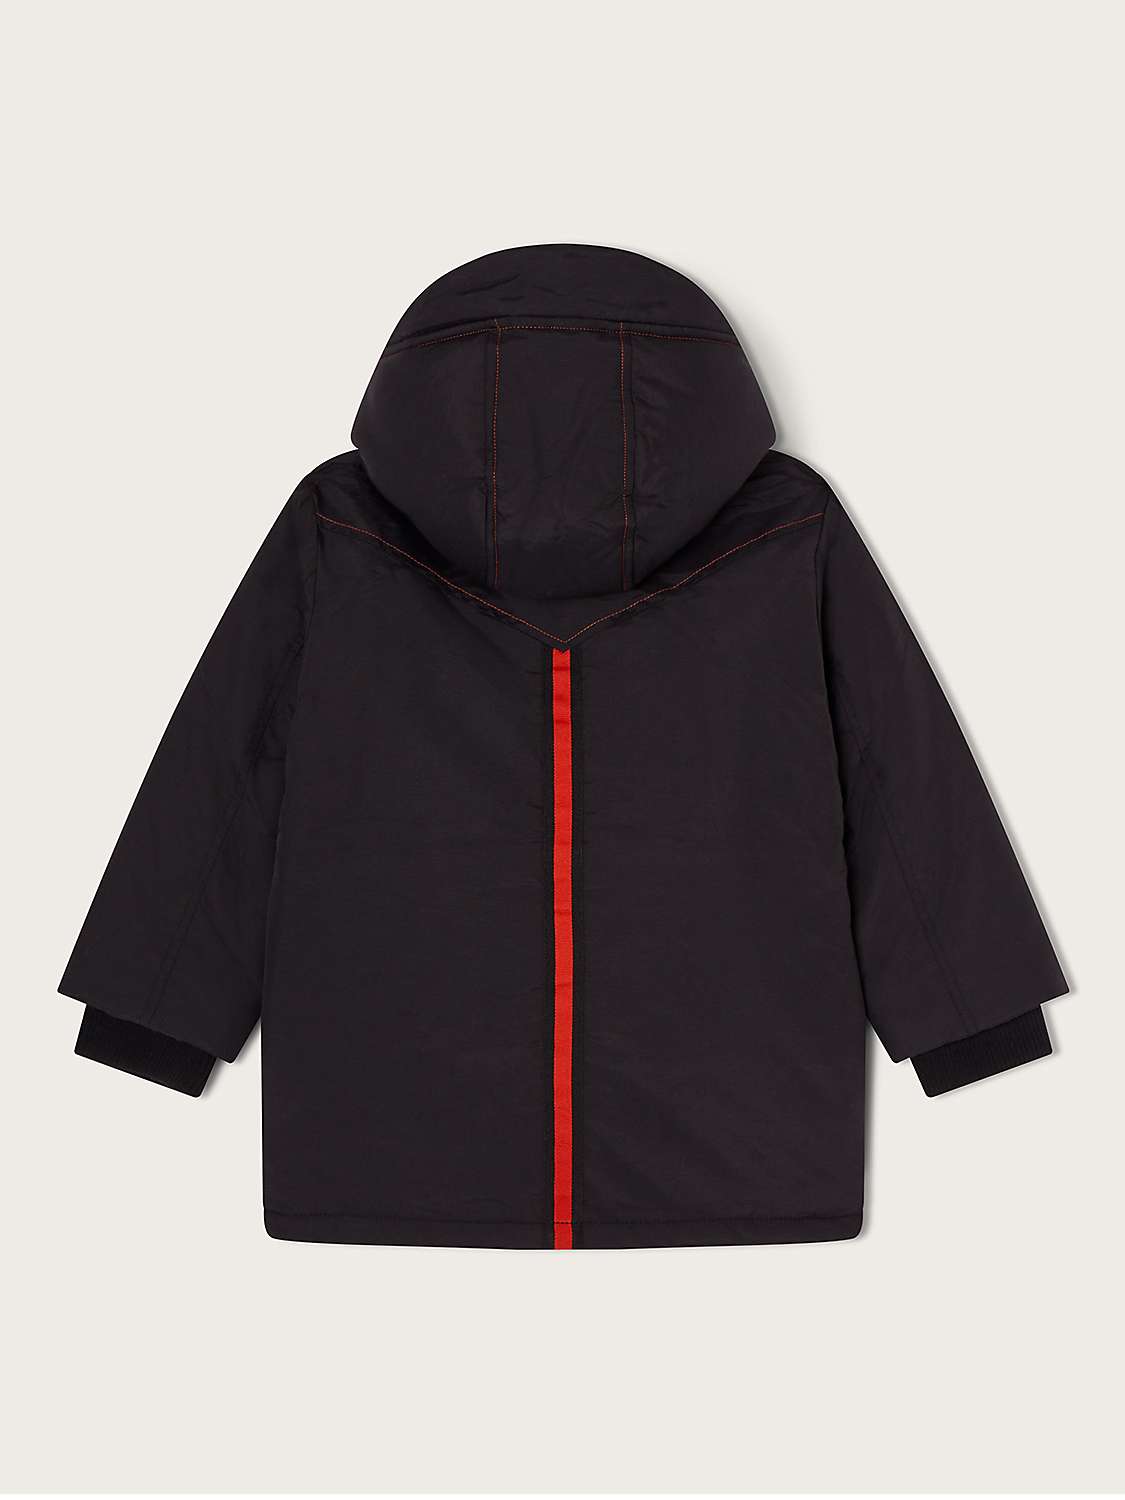 Buy Monsoon Kids' Contrast Stitch Parka Coat, Black Online at johnlewis.com